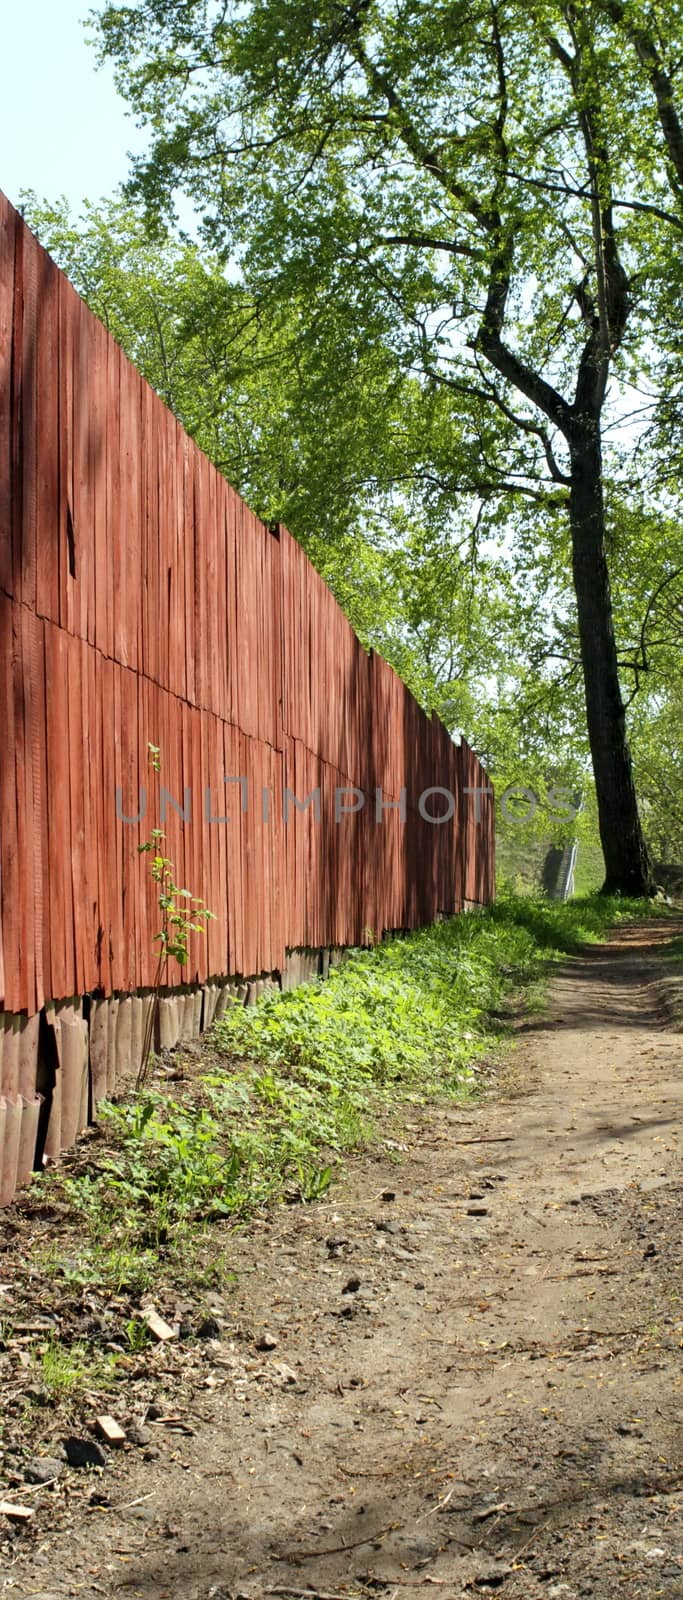 fence along the walkway